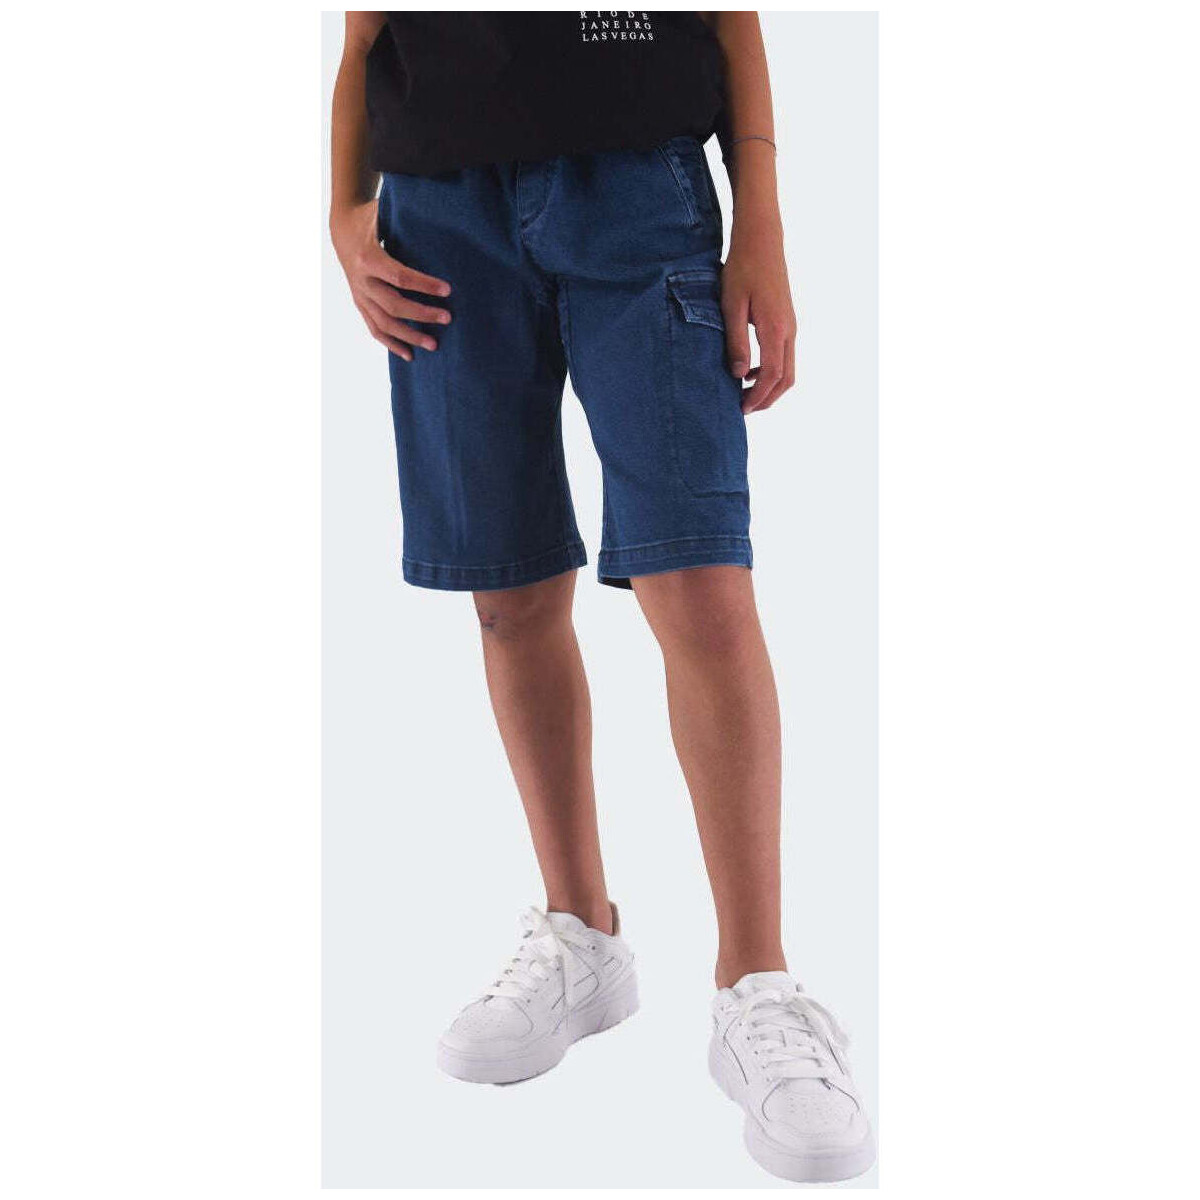 Abbigliamento Bambino Shorts / Bermuda Hero  Blu